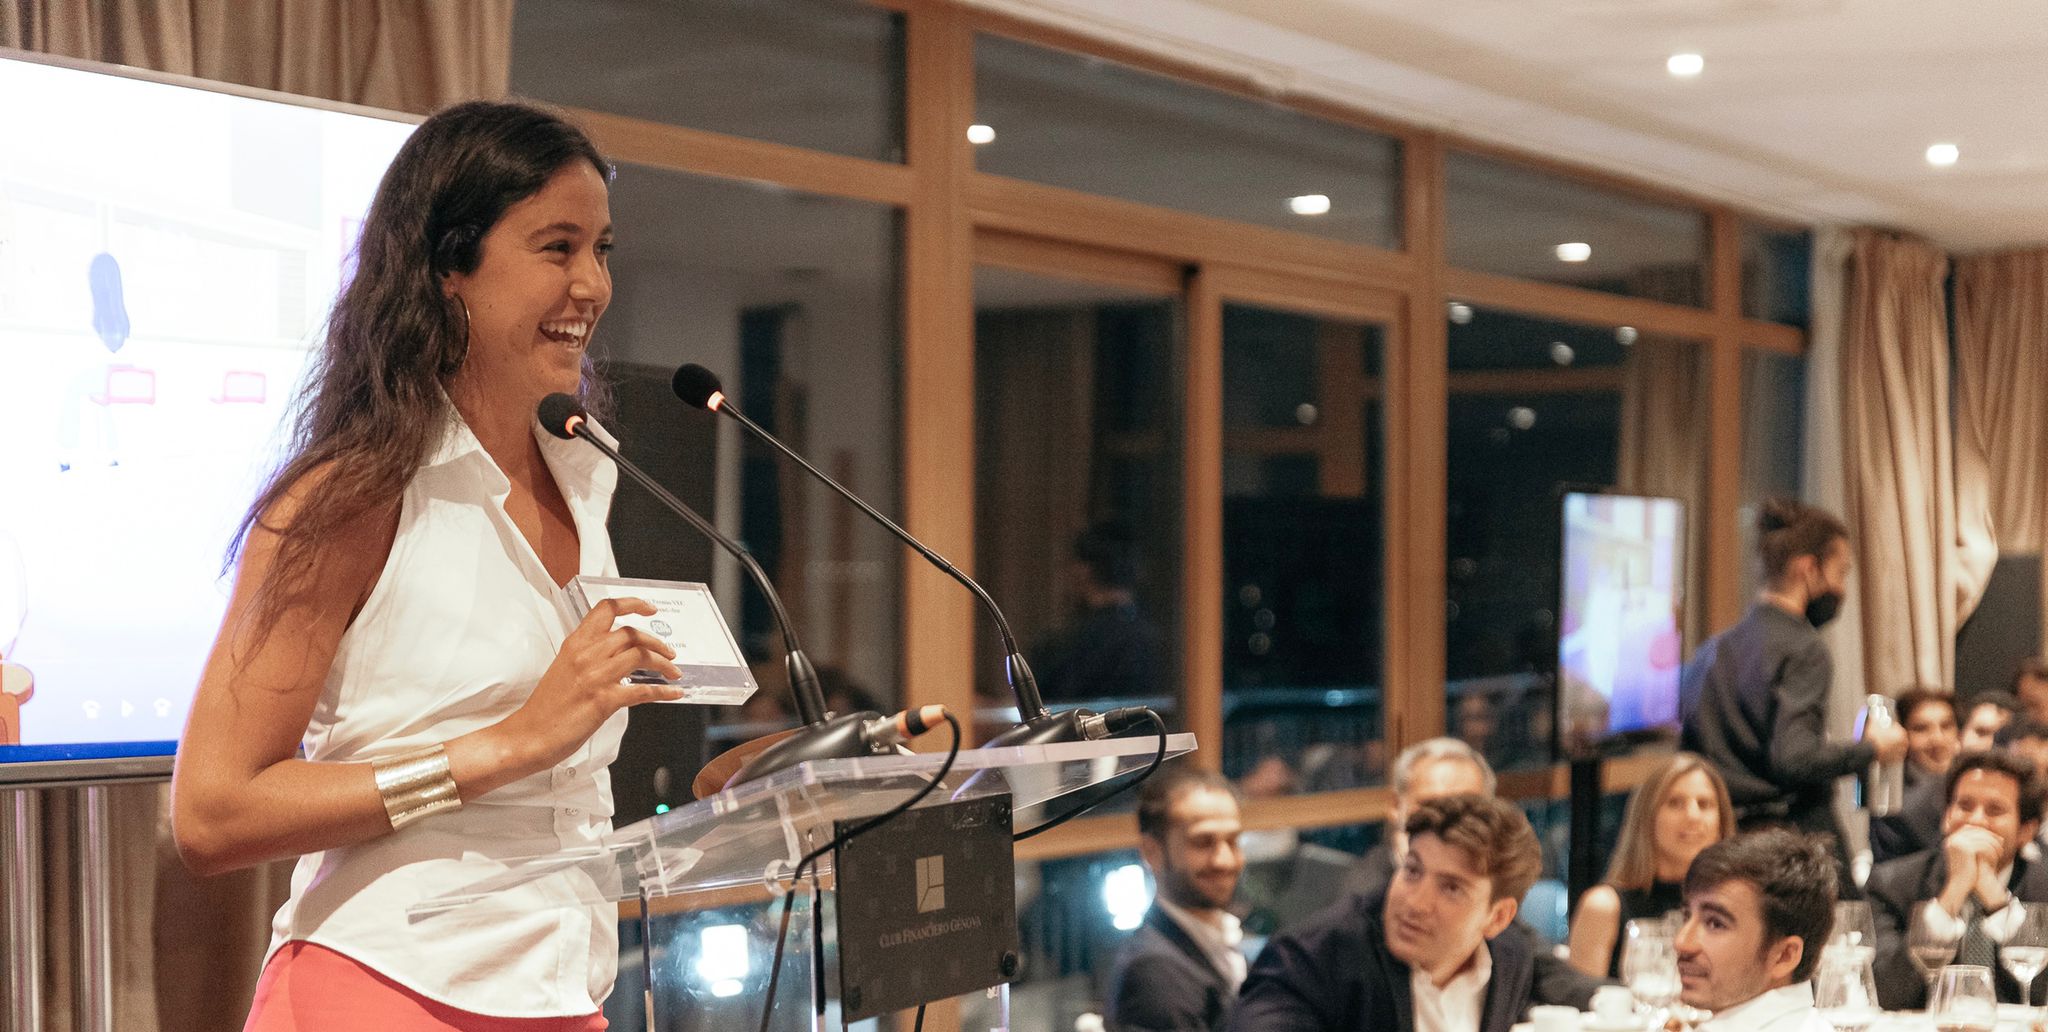 Alba Sánchez Vicario reconocida con el Premio Emprendedores YEC 2022 por sus pizzas saludables Coliflow